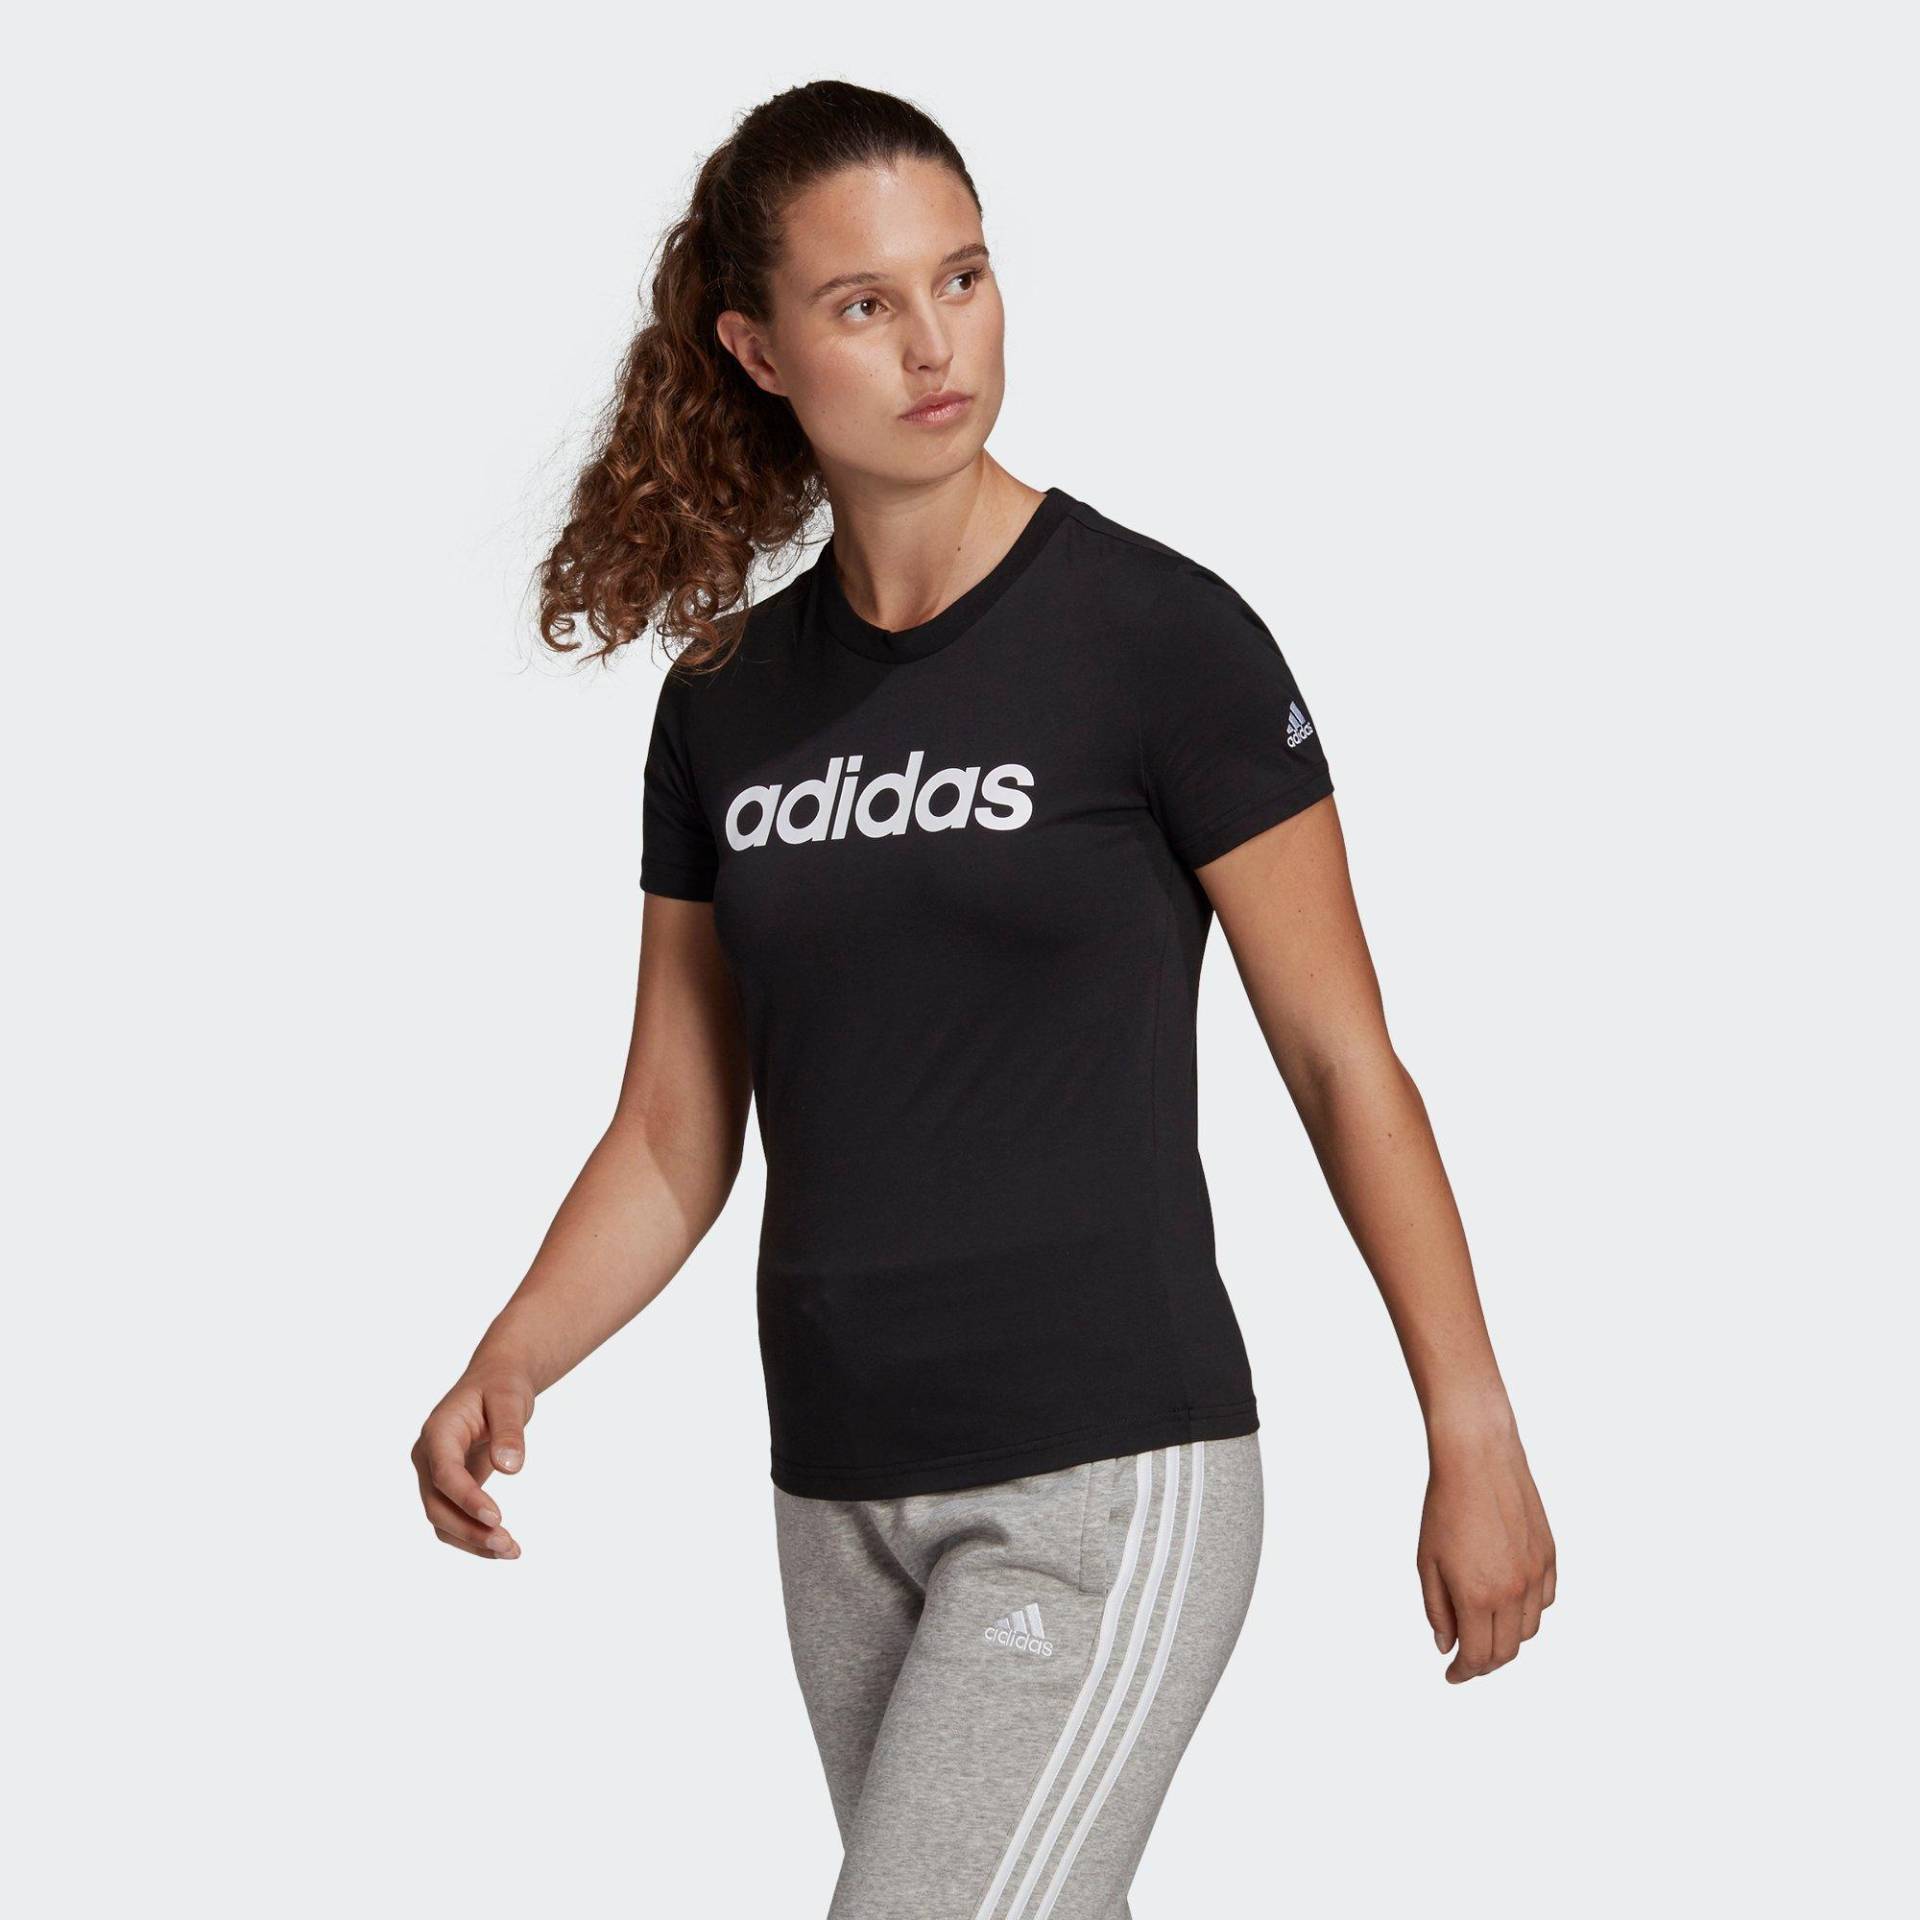 adidas T-shirt Damen Black M von Adidas